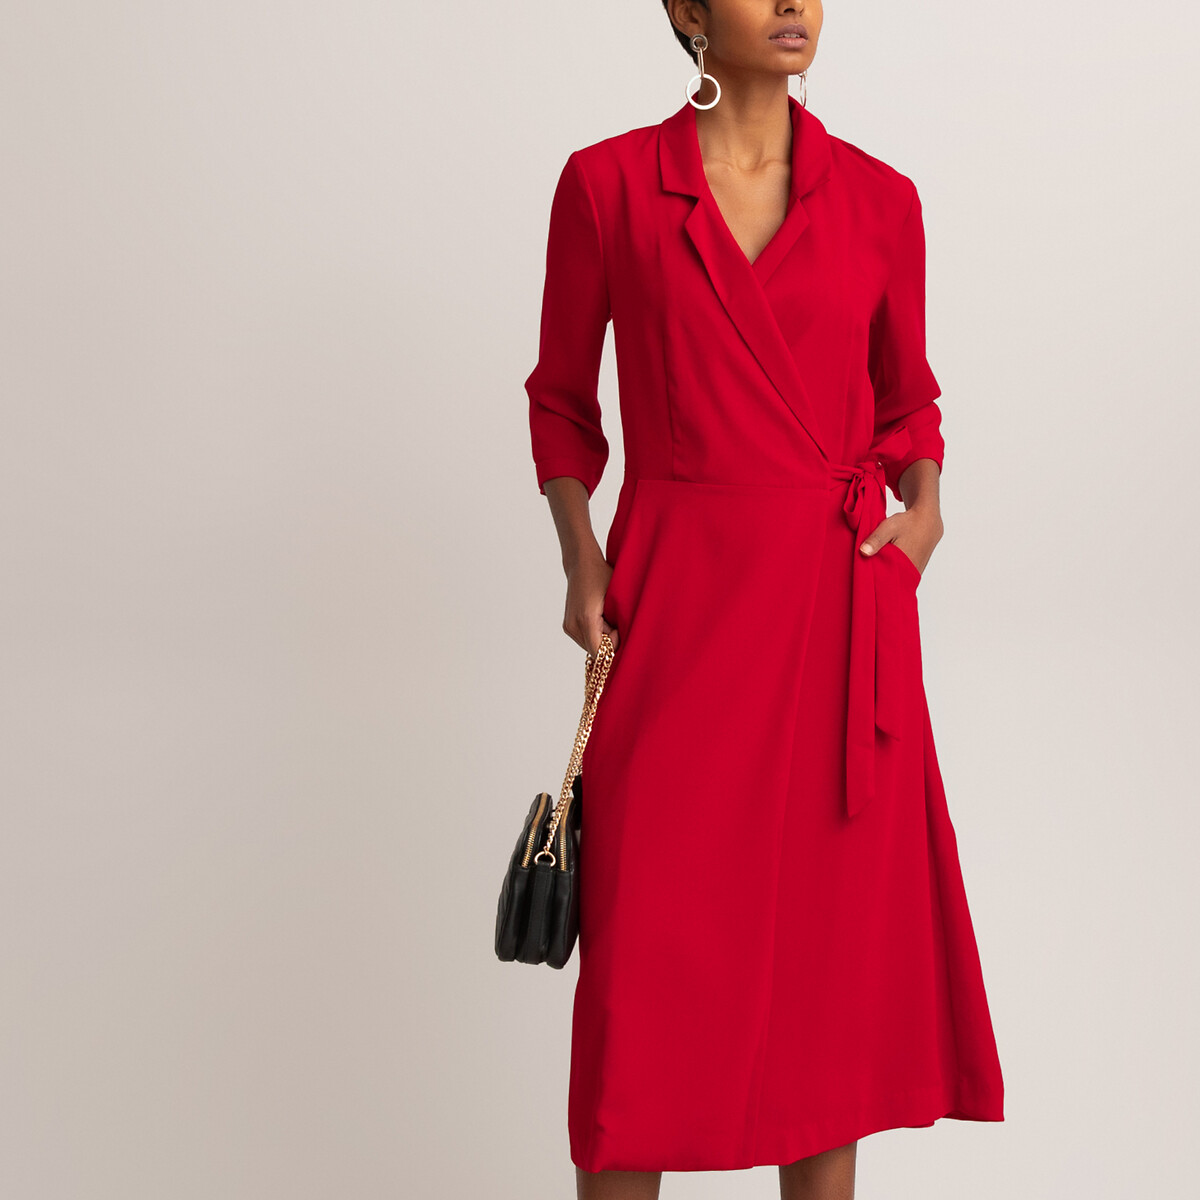 Платье La Redoute С воротником и рукавами 46 (FR) - 52 (RUS) красный, размер 46 (FR) - 52 (RUS) С воротником и рукавами 46 (FR) - 52 (RUS) красный - фото 3